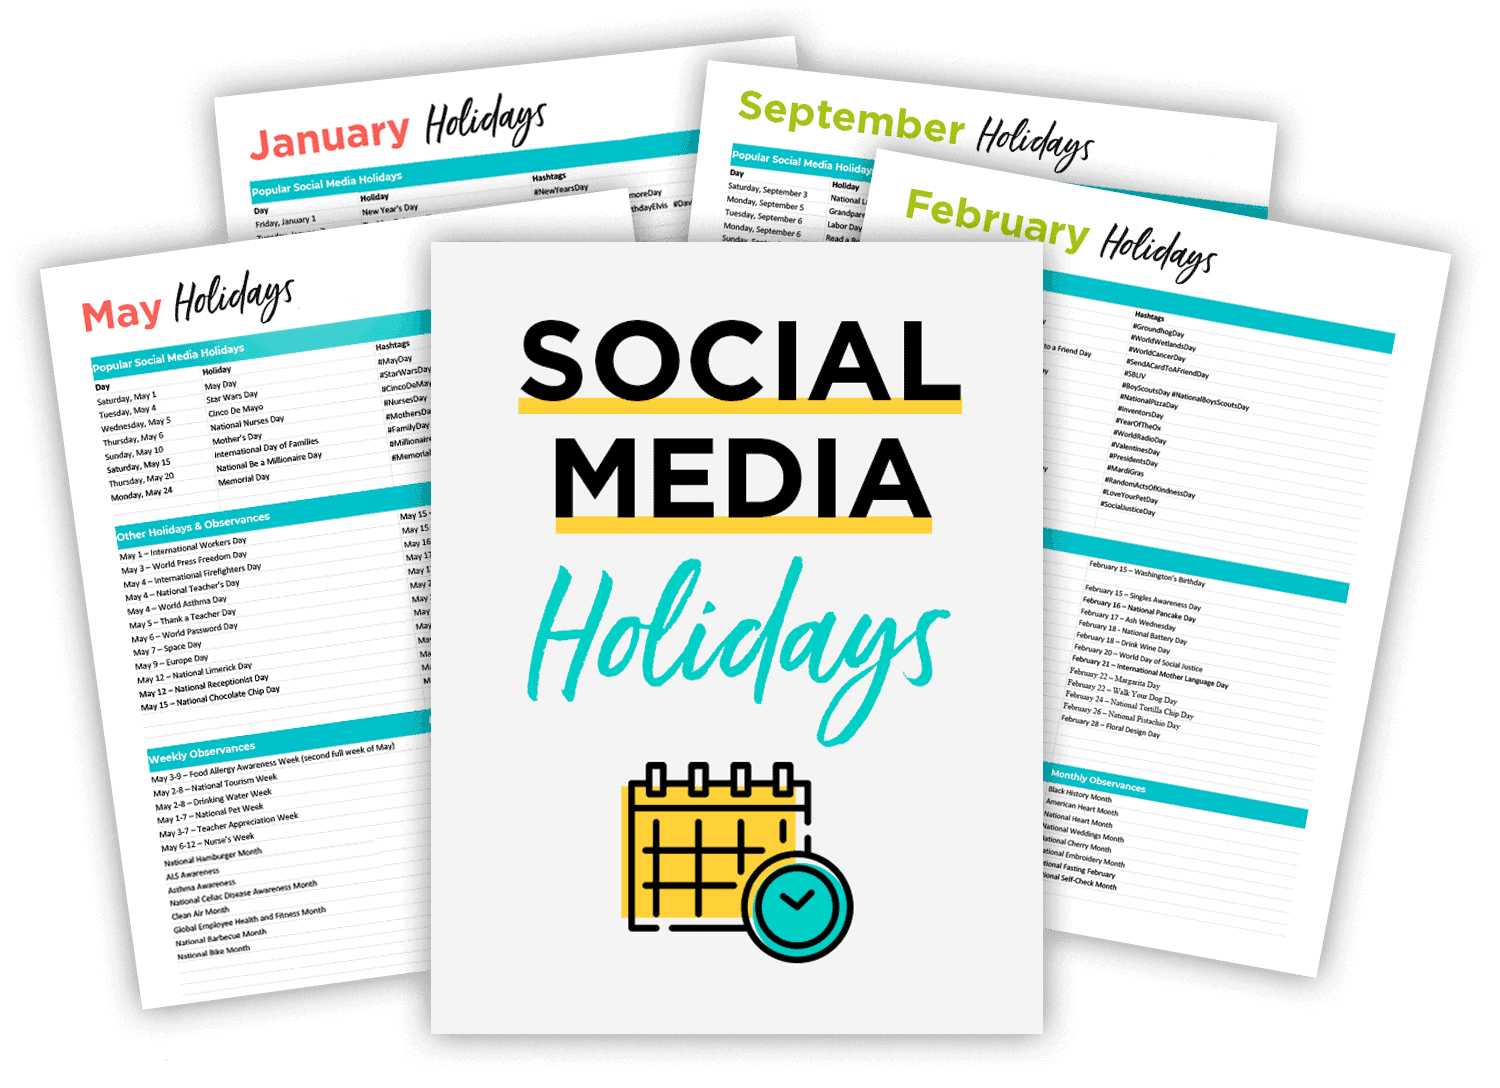 Social Media Holidays list